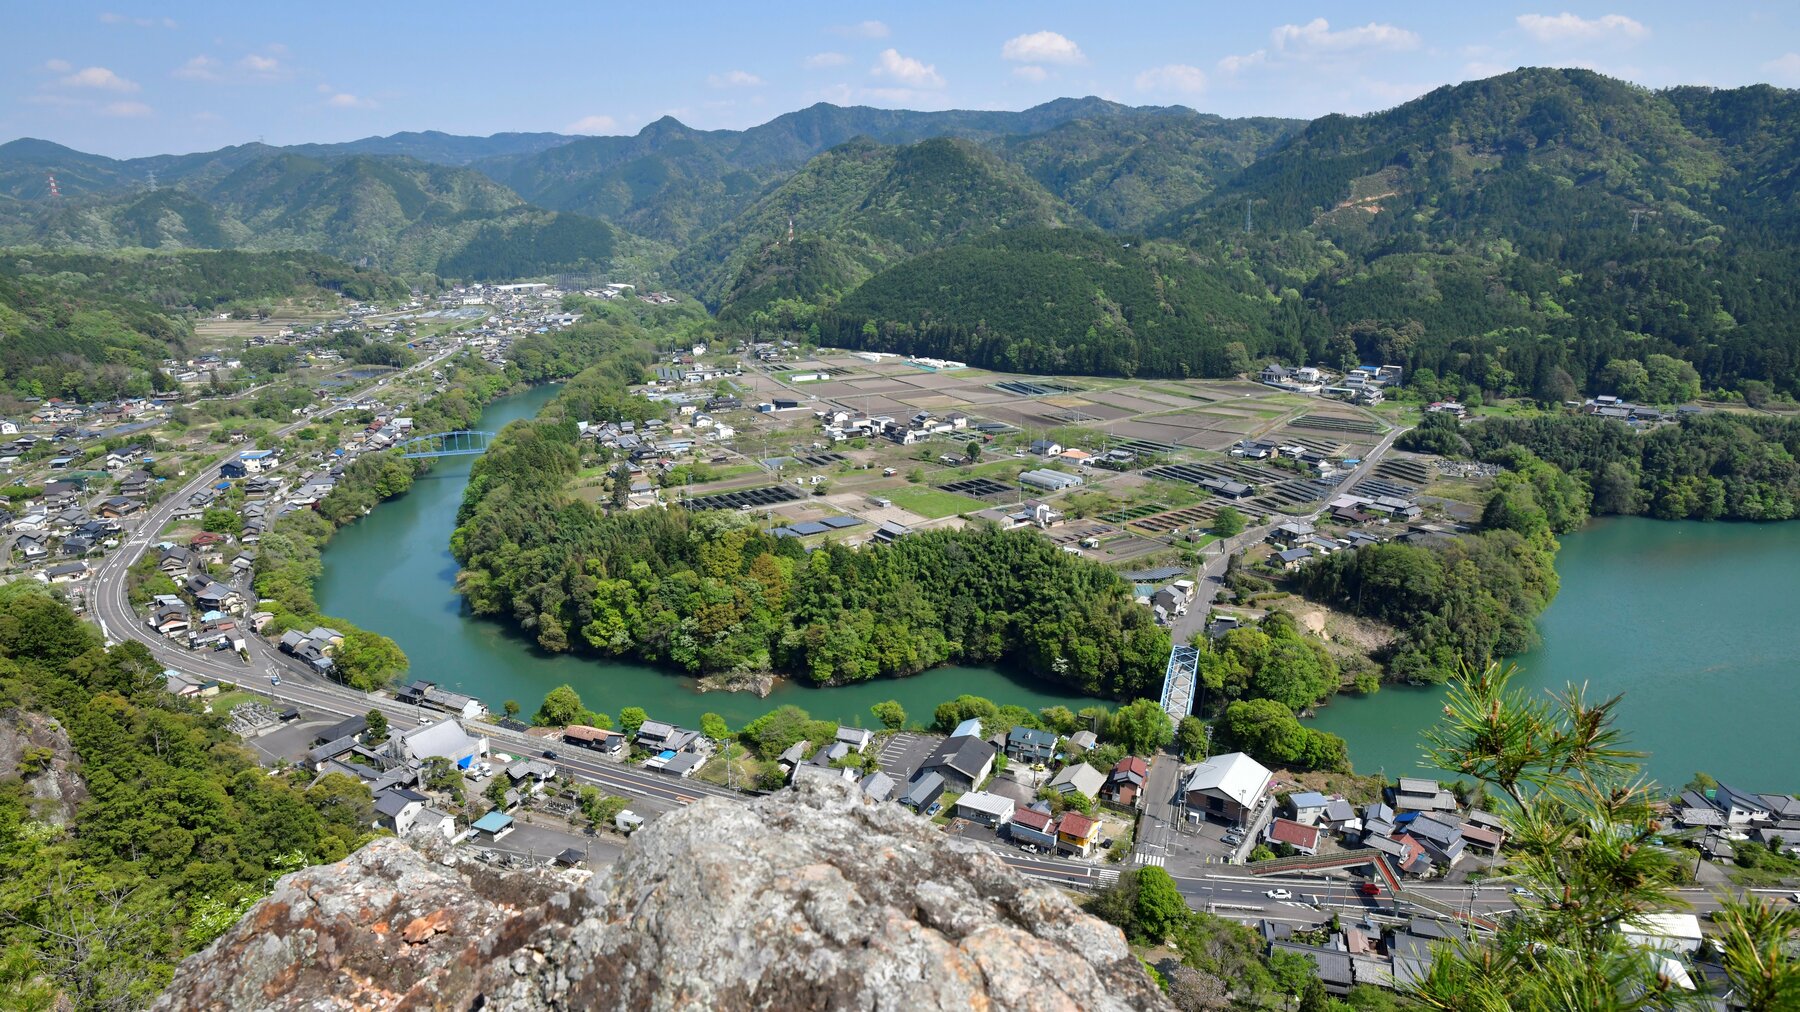 岐阜のグランドキャニオン 登山者の間で話題 川辺町の新たな観光資源に 岐阜新聞web